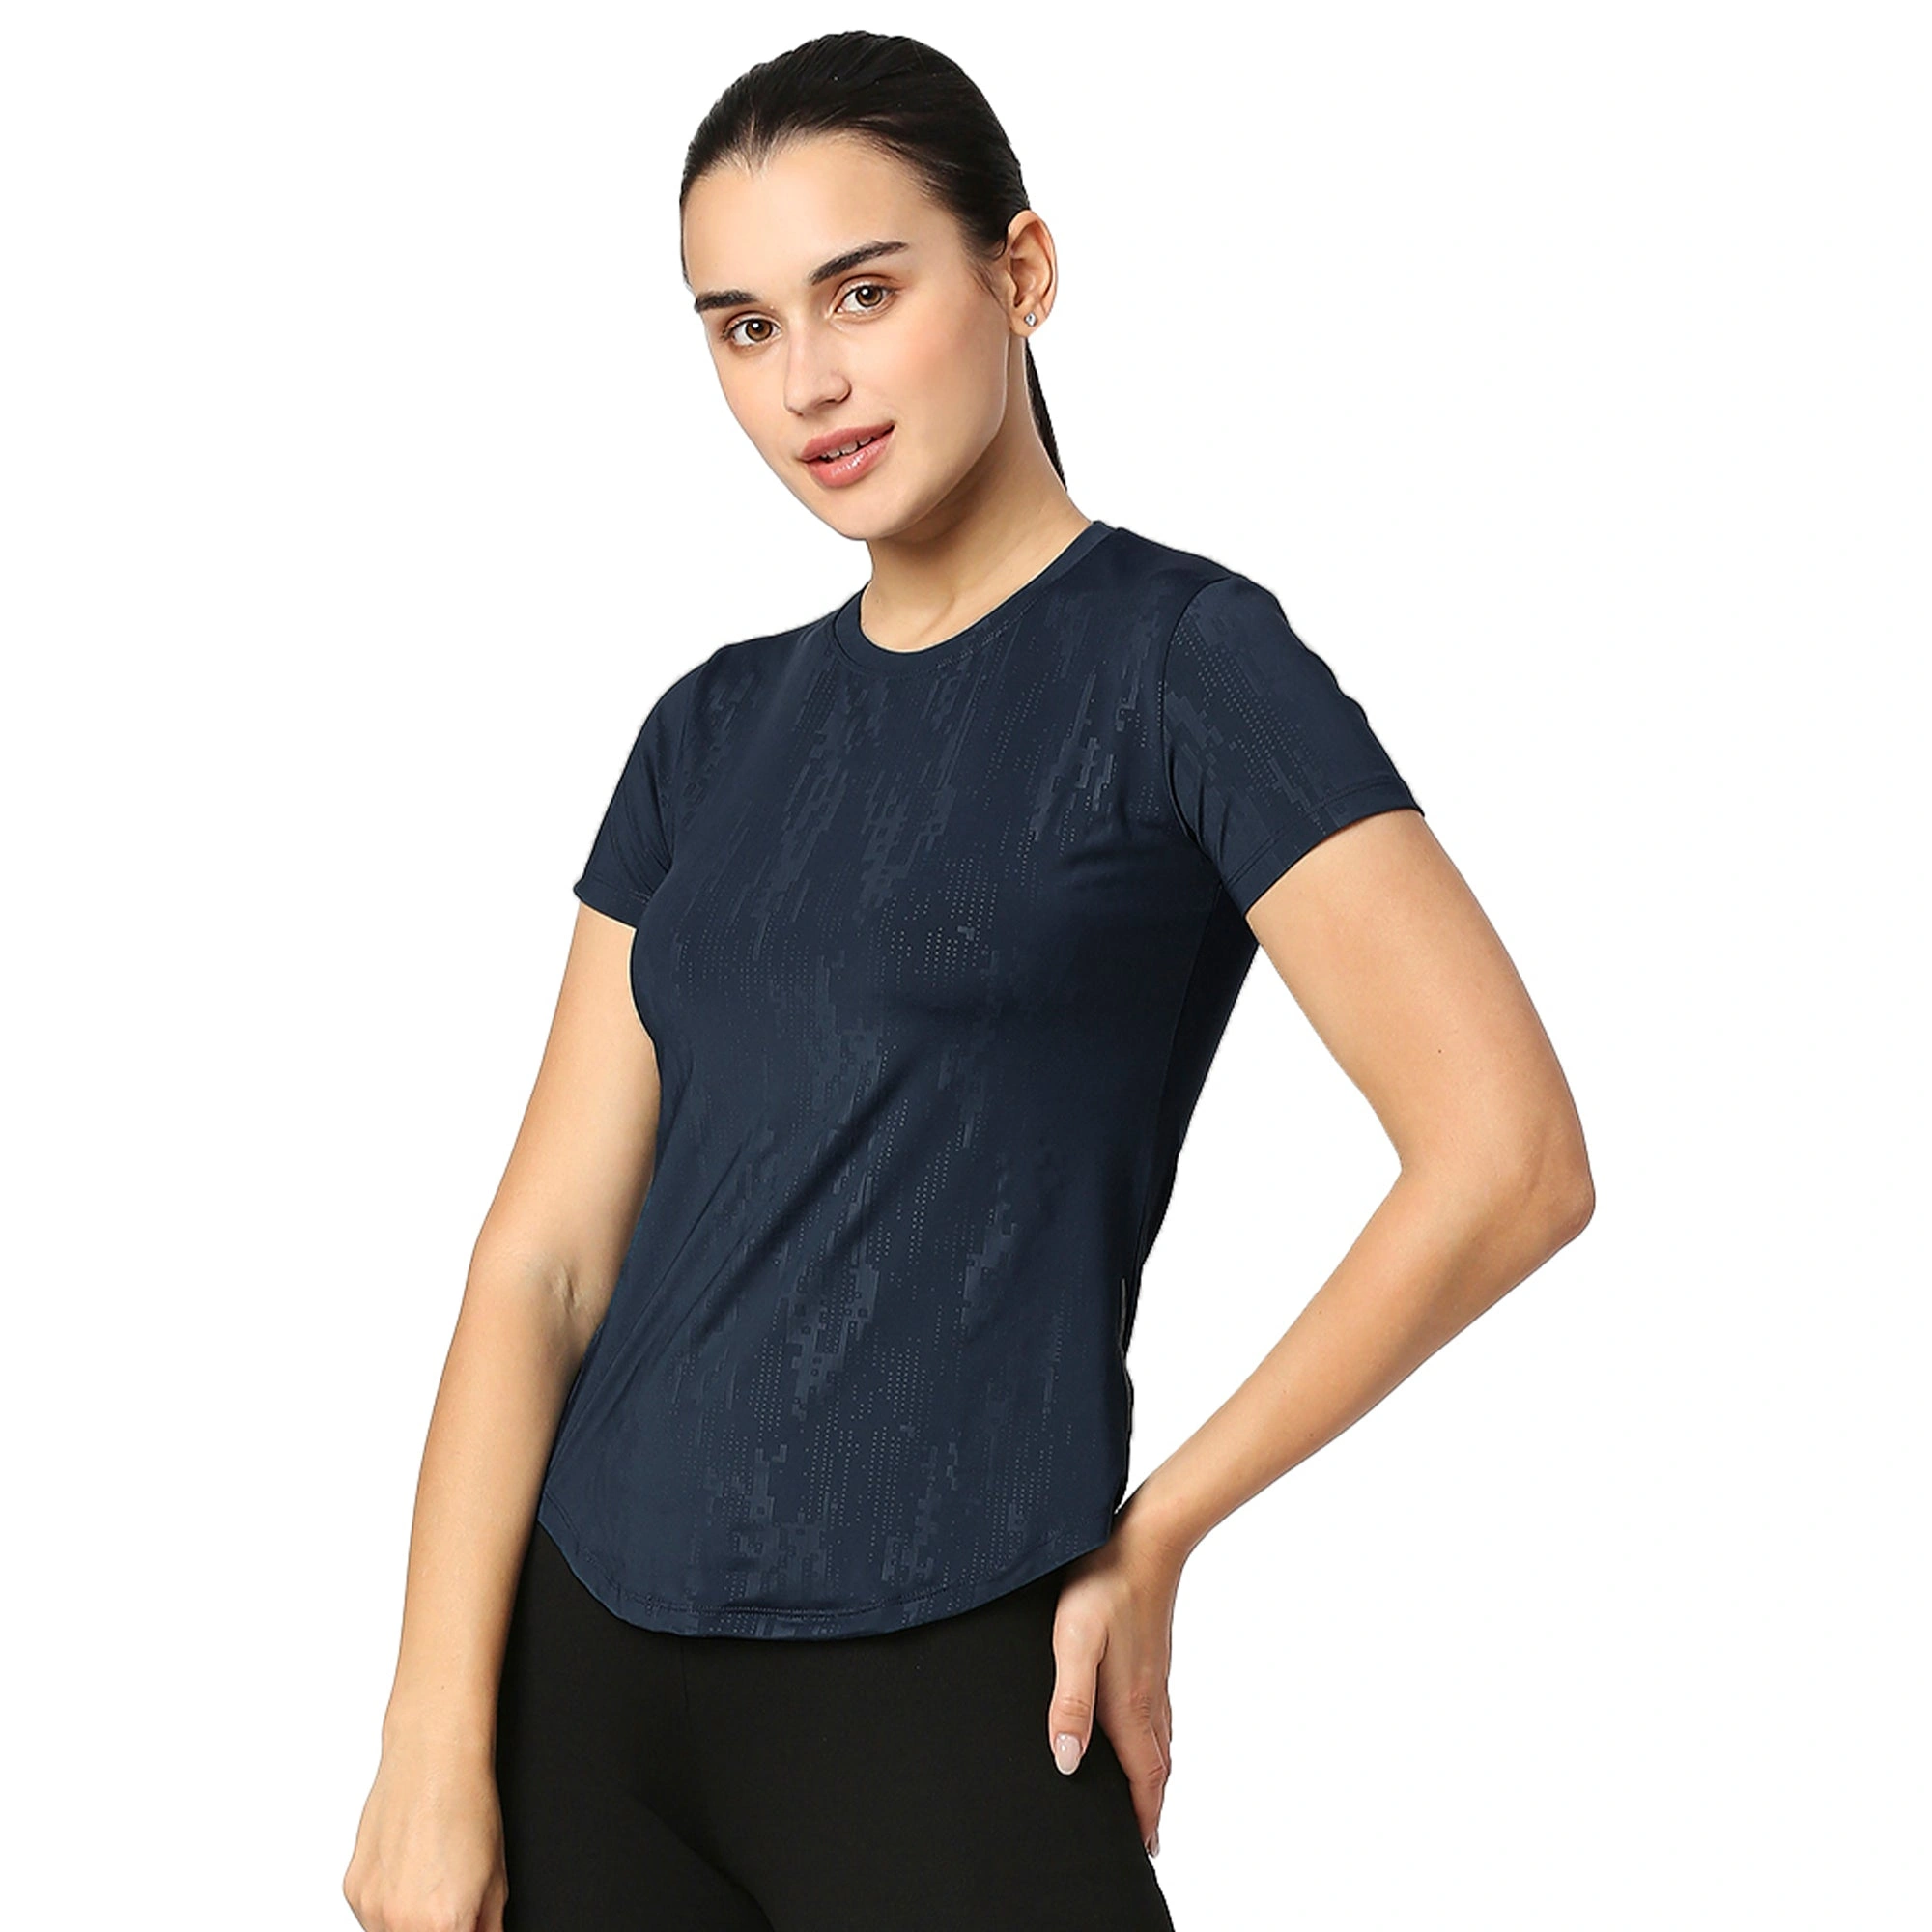 Curved Hem Emboss Print Gym Workout T-Shirt -NAVY BLUE-XL-1